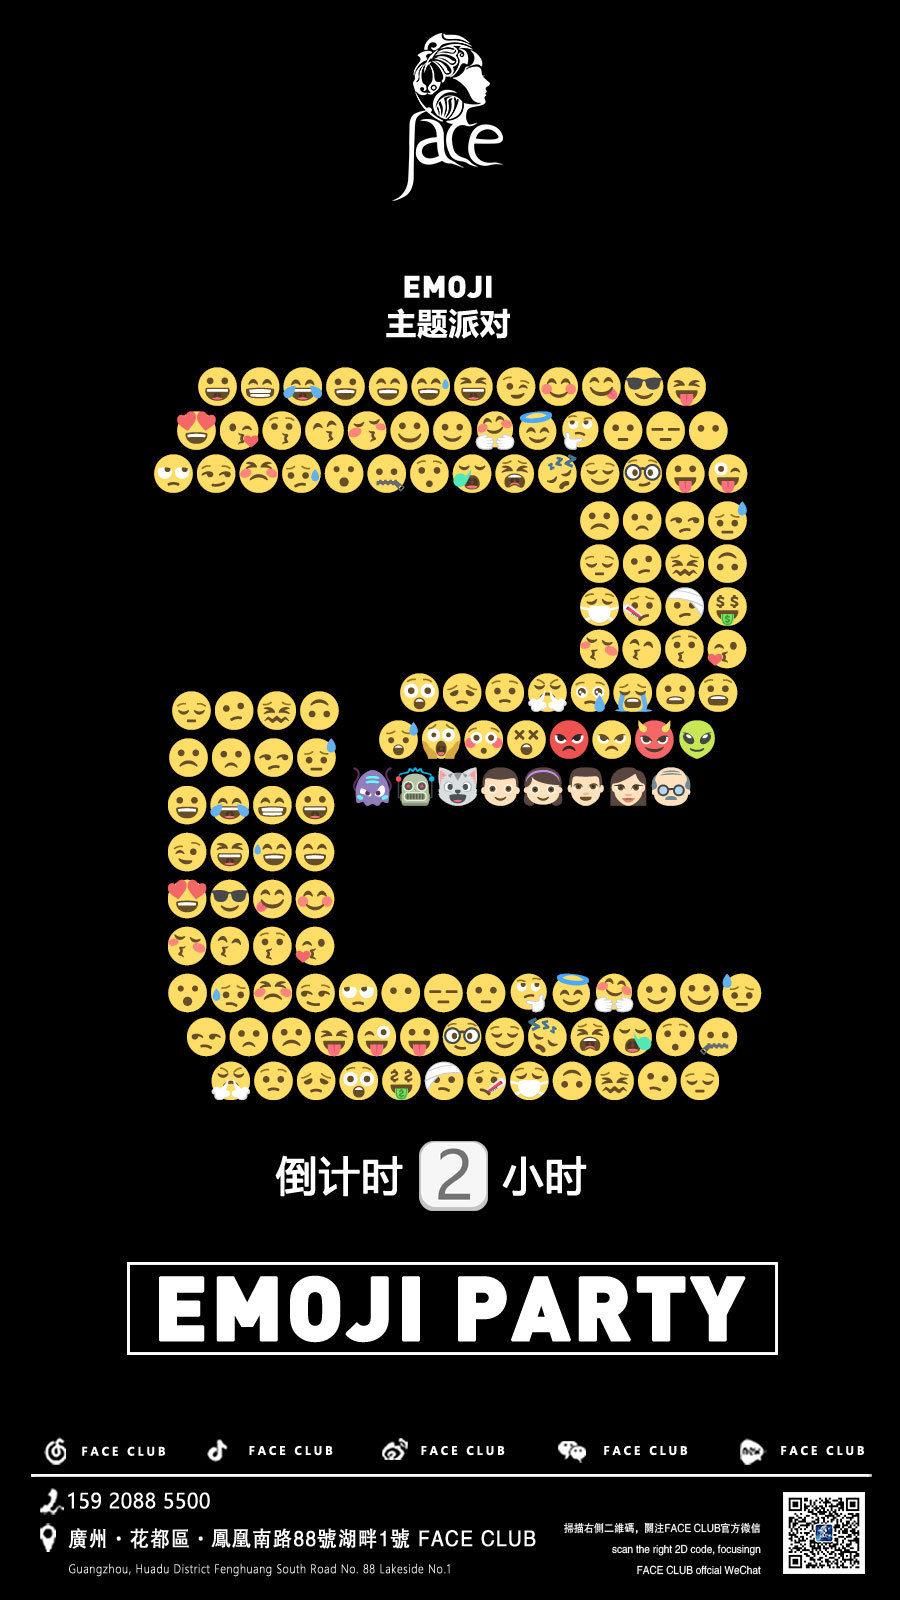 倒计时的emoji表情图片